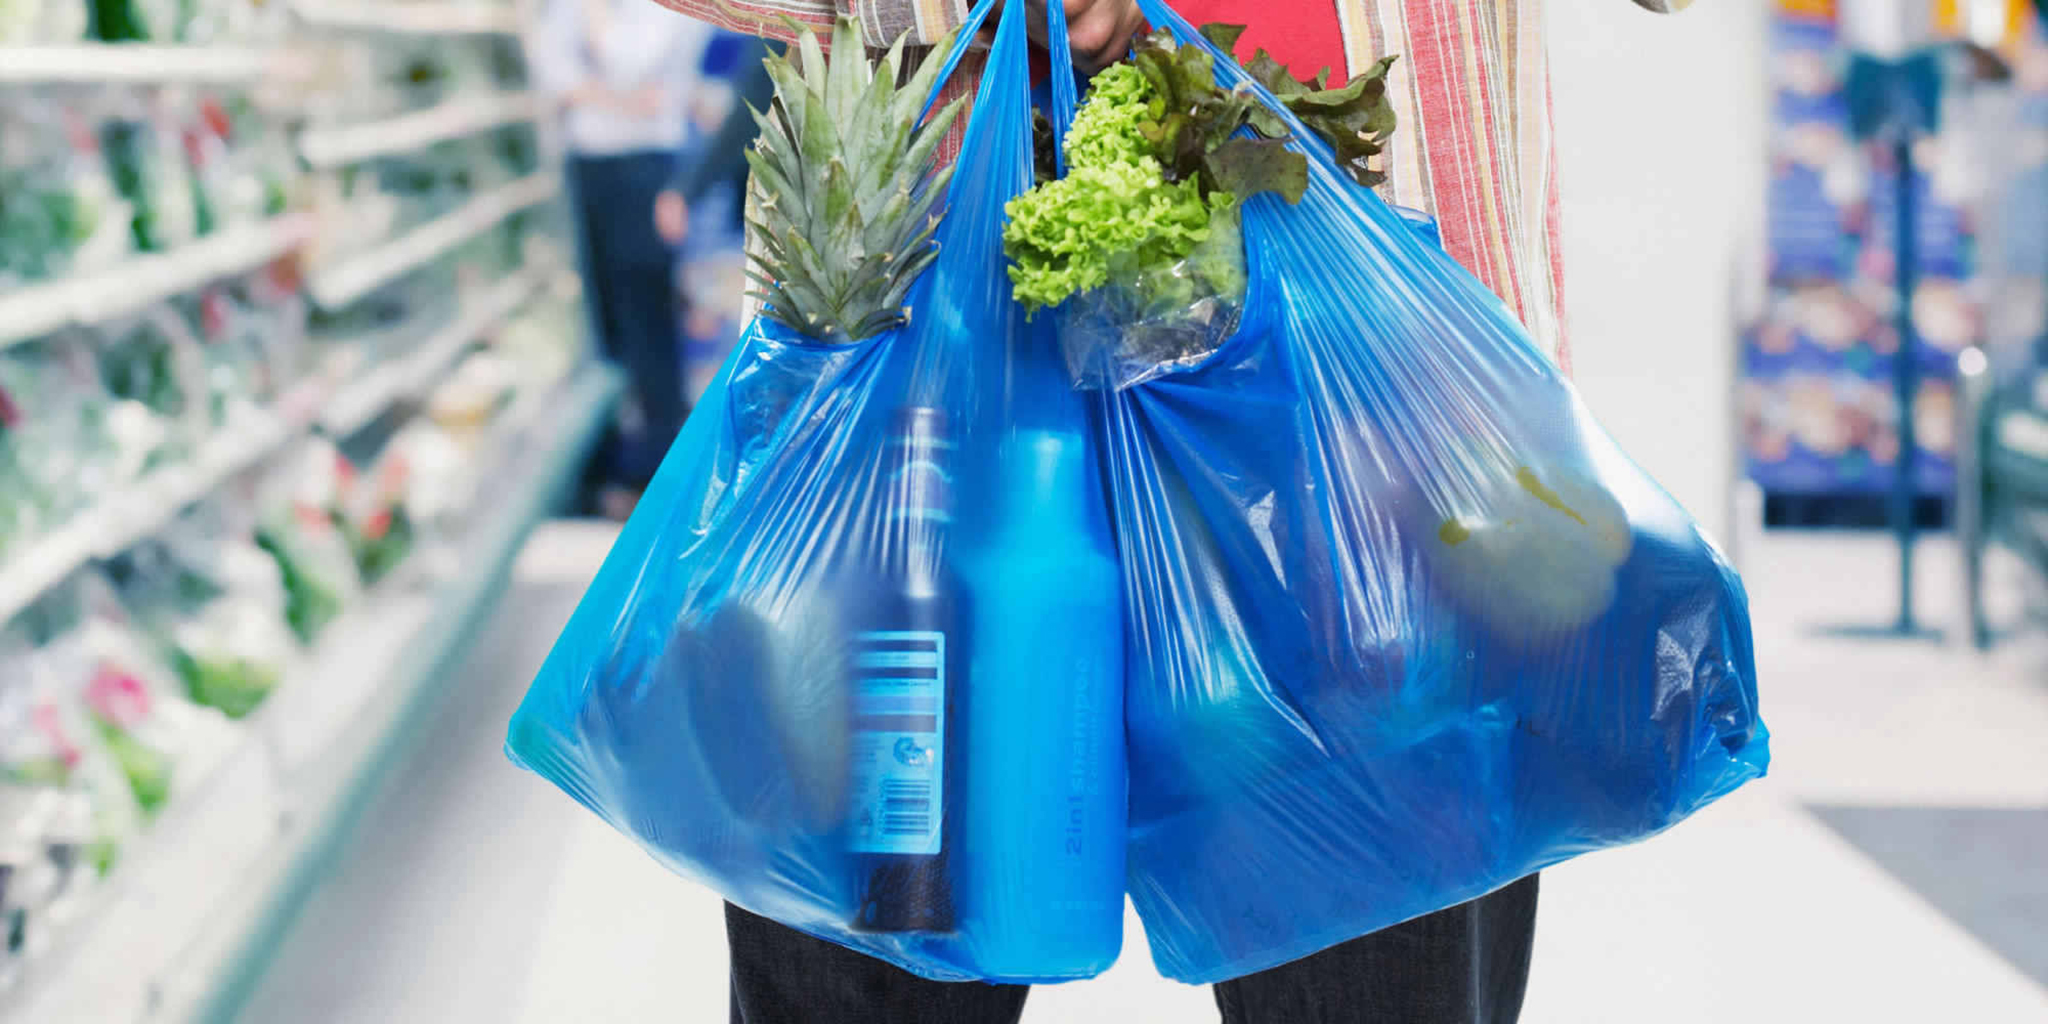 Plástico | Governo prepara taxa entre 50 avos a 1 pataca para sacos